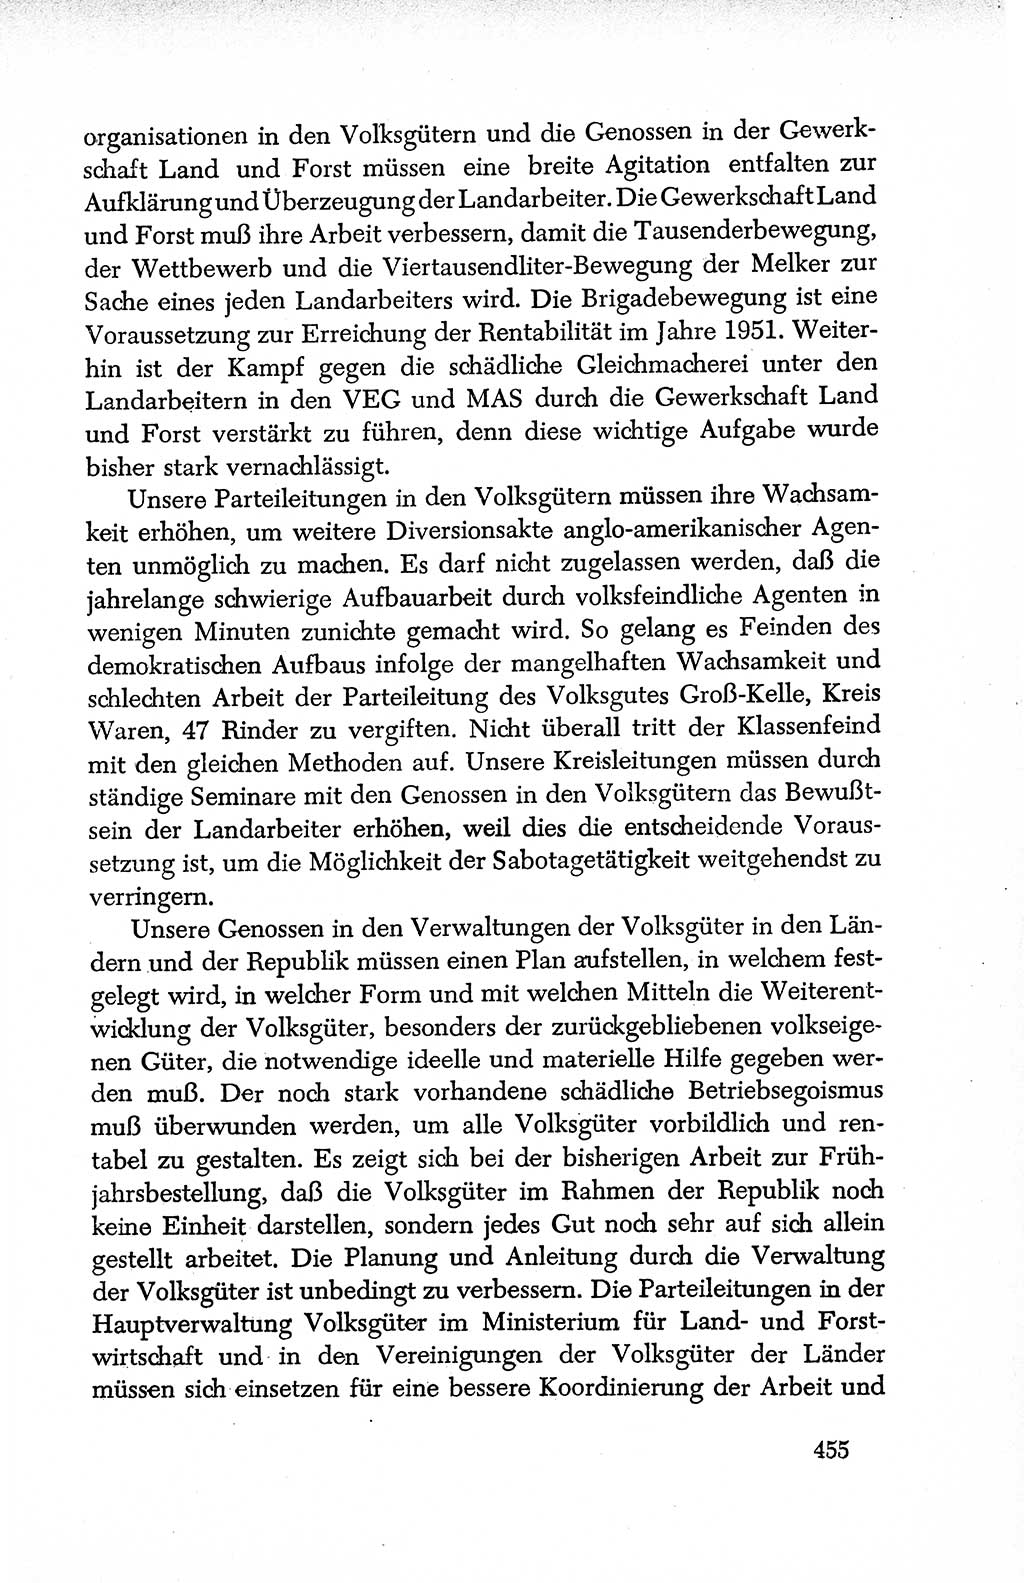 Dokumente der Sozialistischen Einheitspartei Deutschlands (SED) [Deutsche Demokratische Republik (DDR)] 1950-1952, Seite 455 (Dok. SED DDR 1950-1952, S. 455)